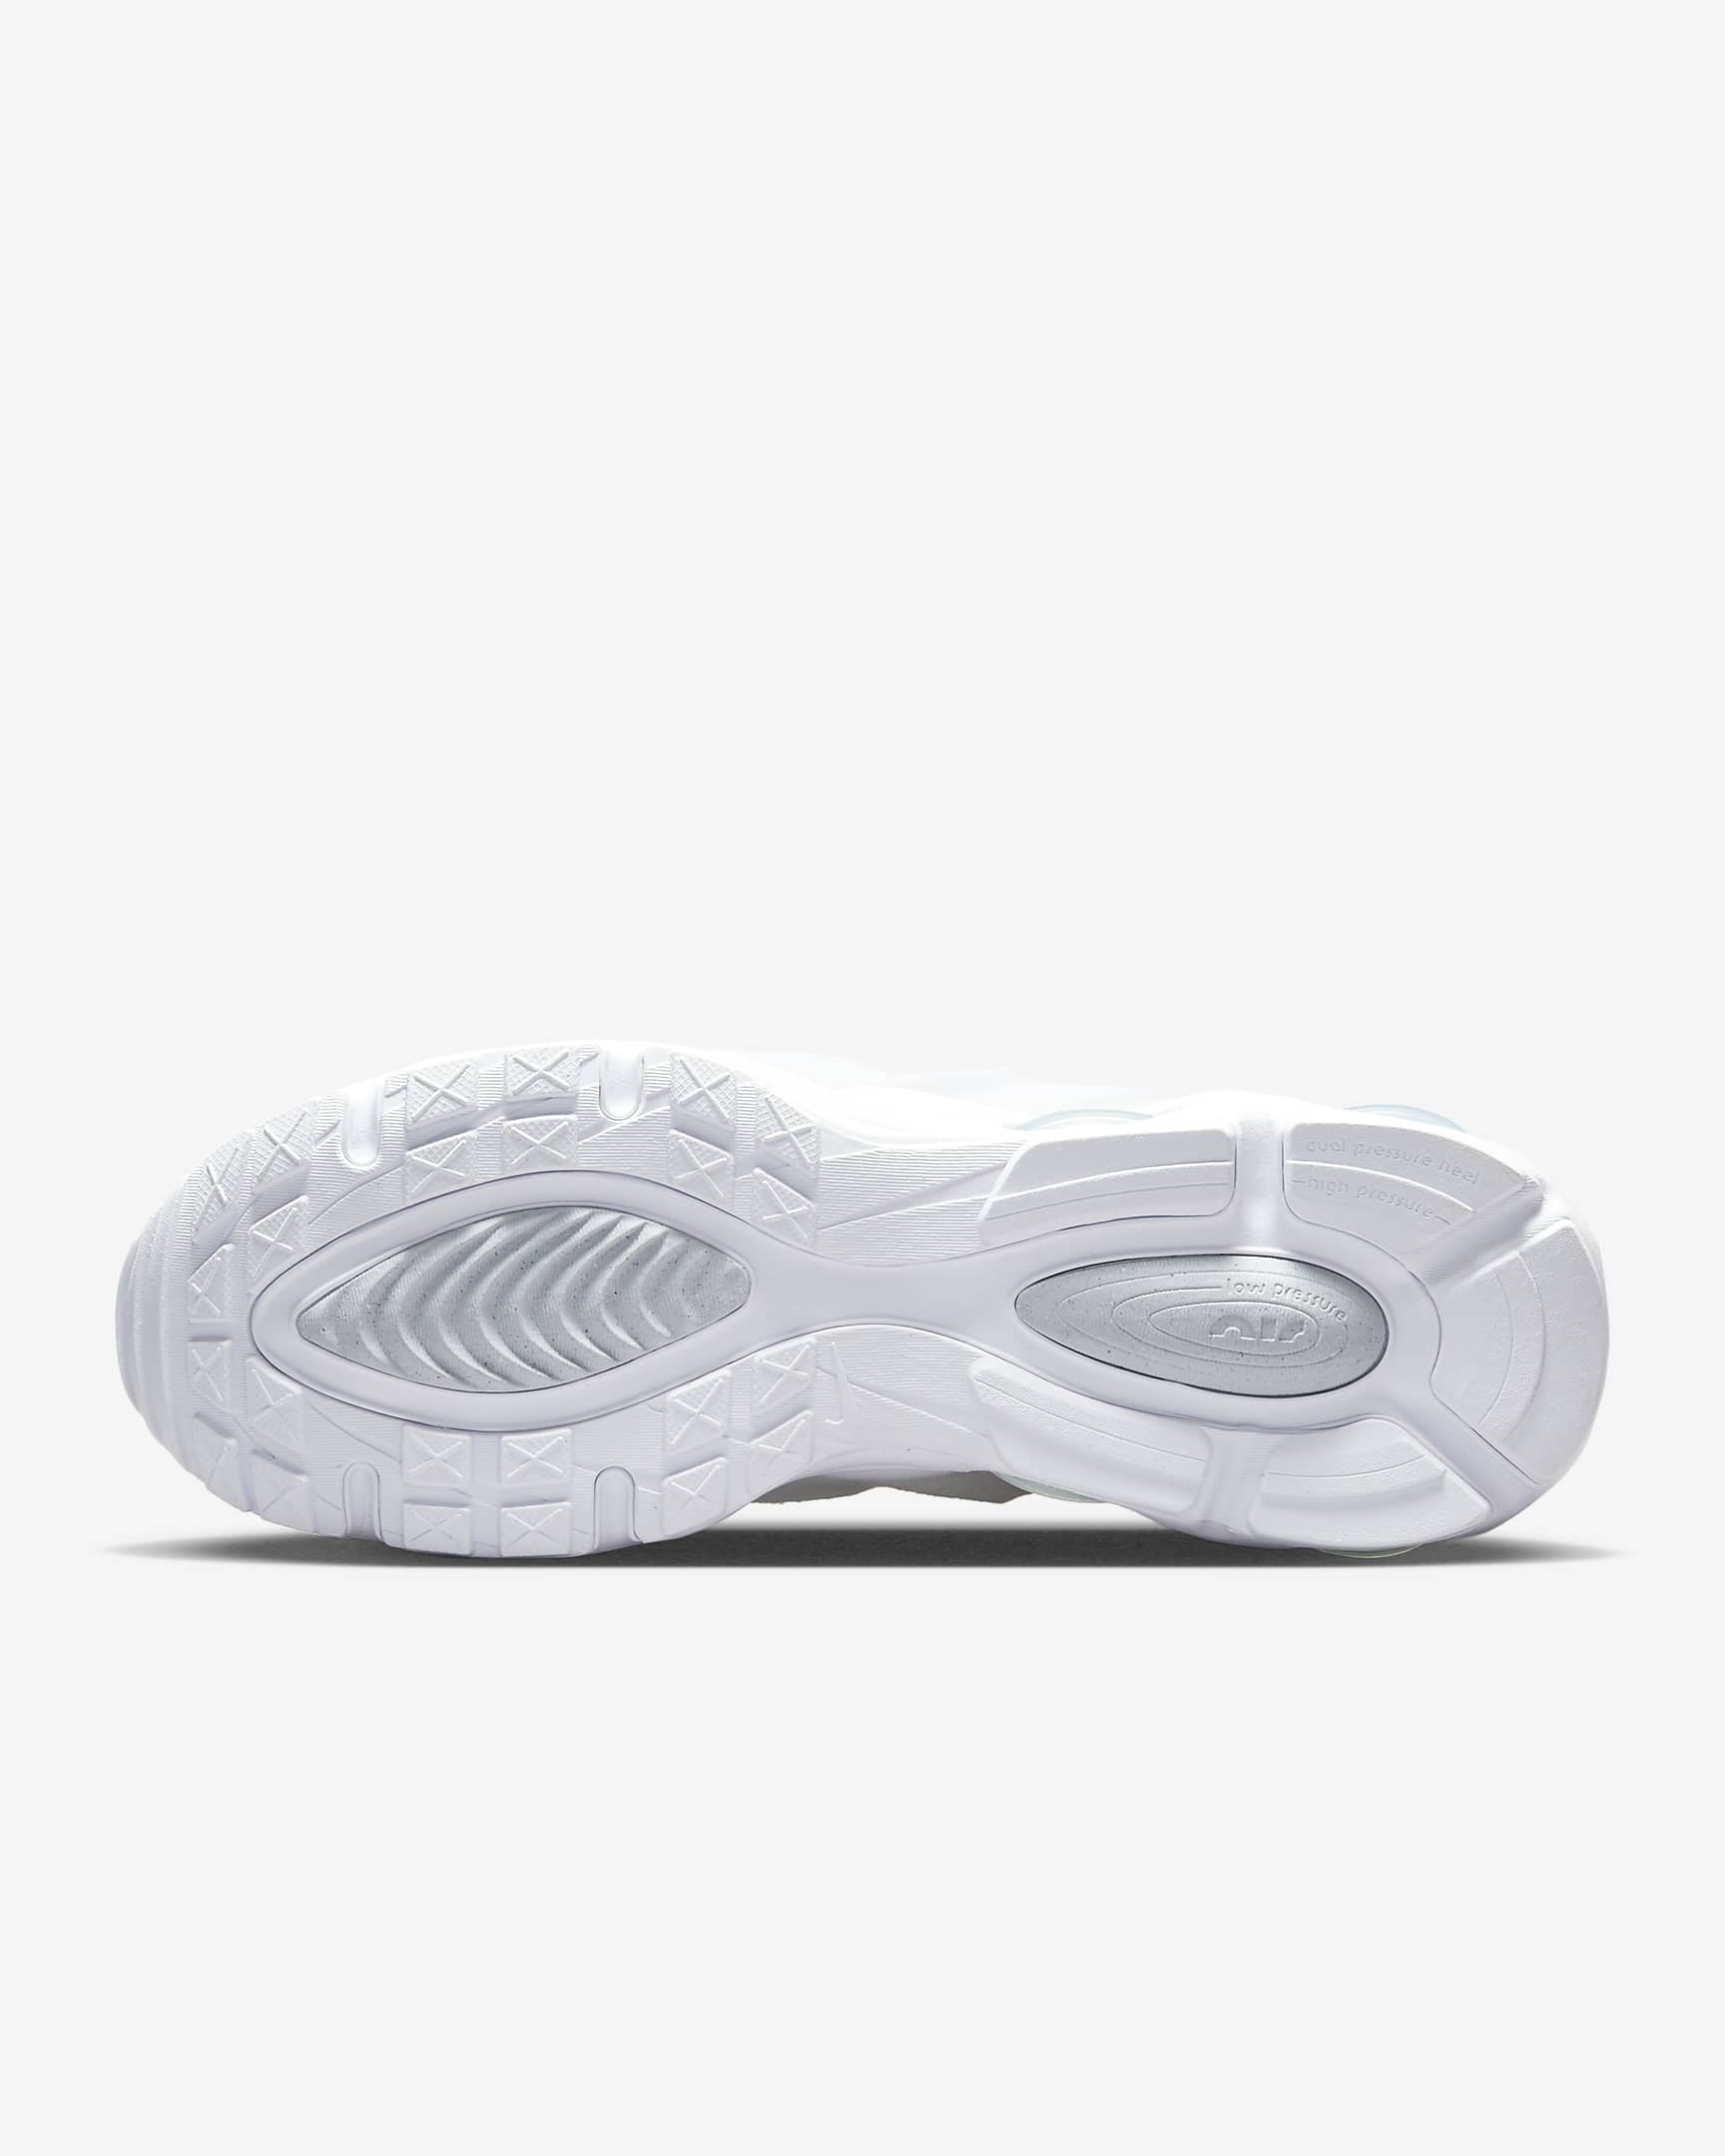 Nike Air Max TW Men's Shoes - White/White/White/White